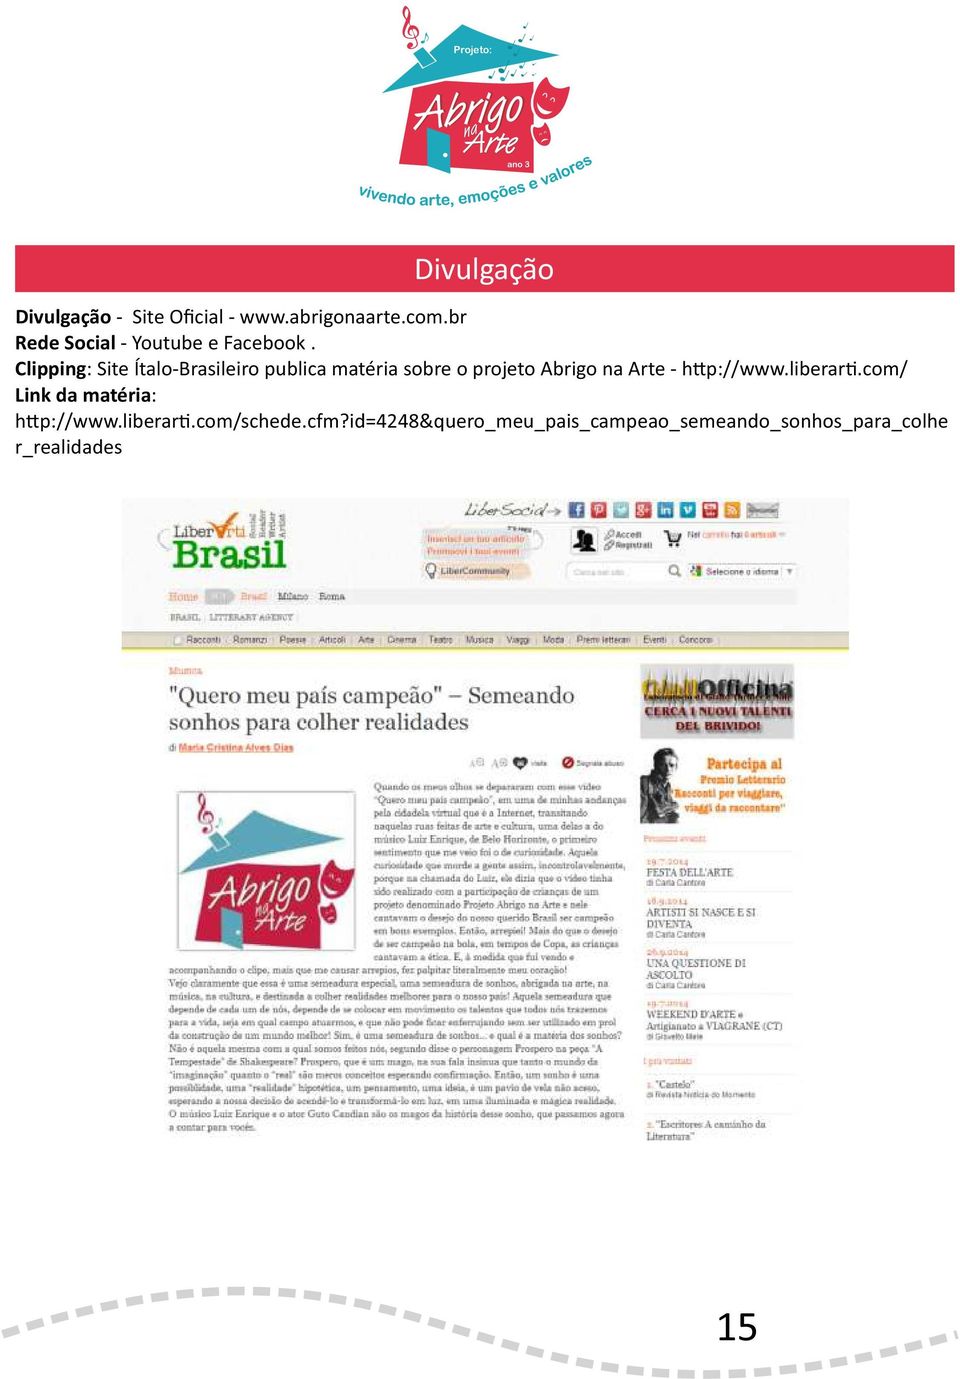 Clipping: Site Ítalo-Brasileiro publica matéria sobre o projeto Abrigo Arte - h